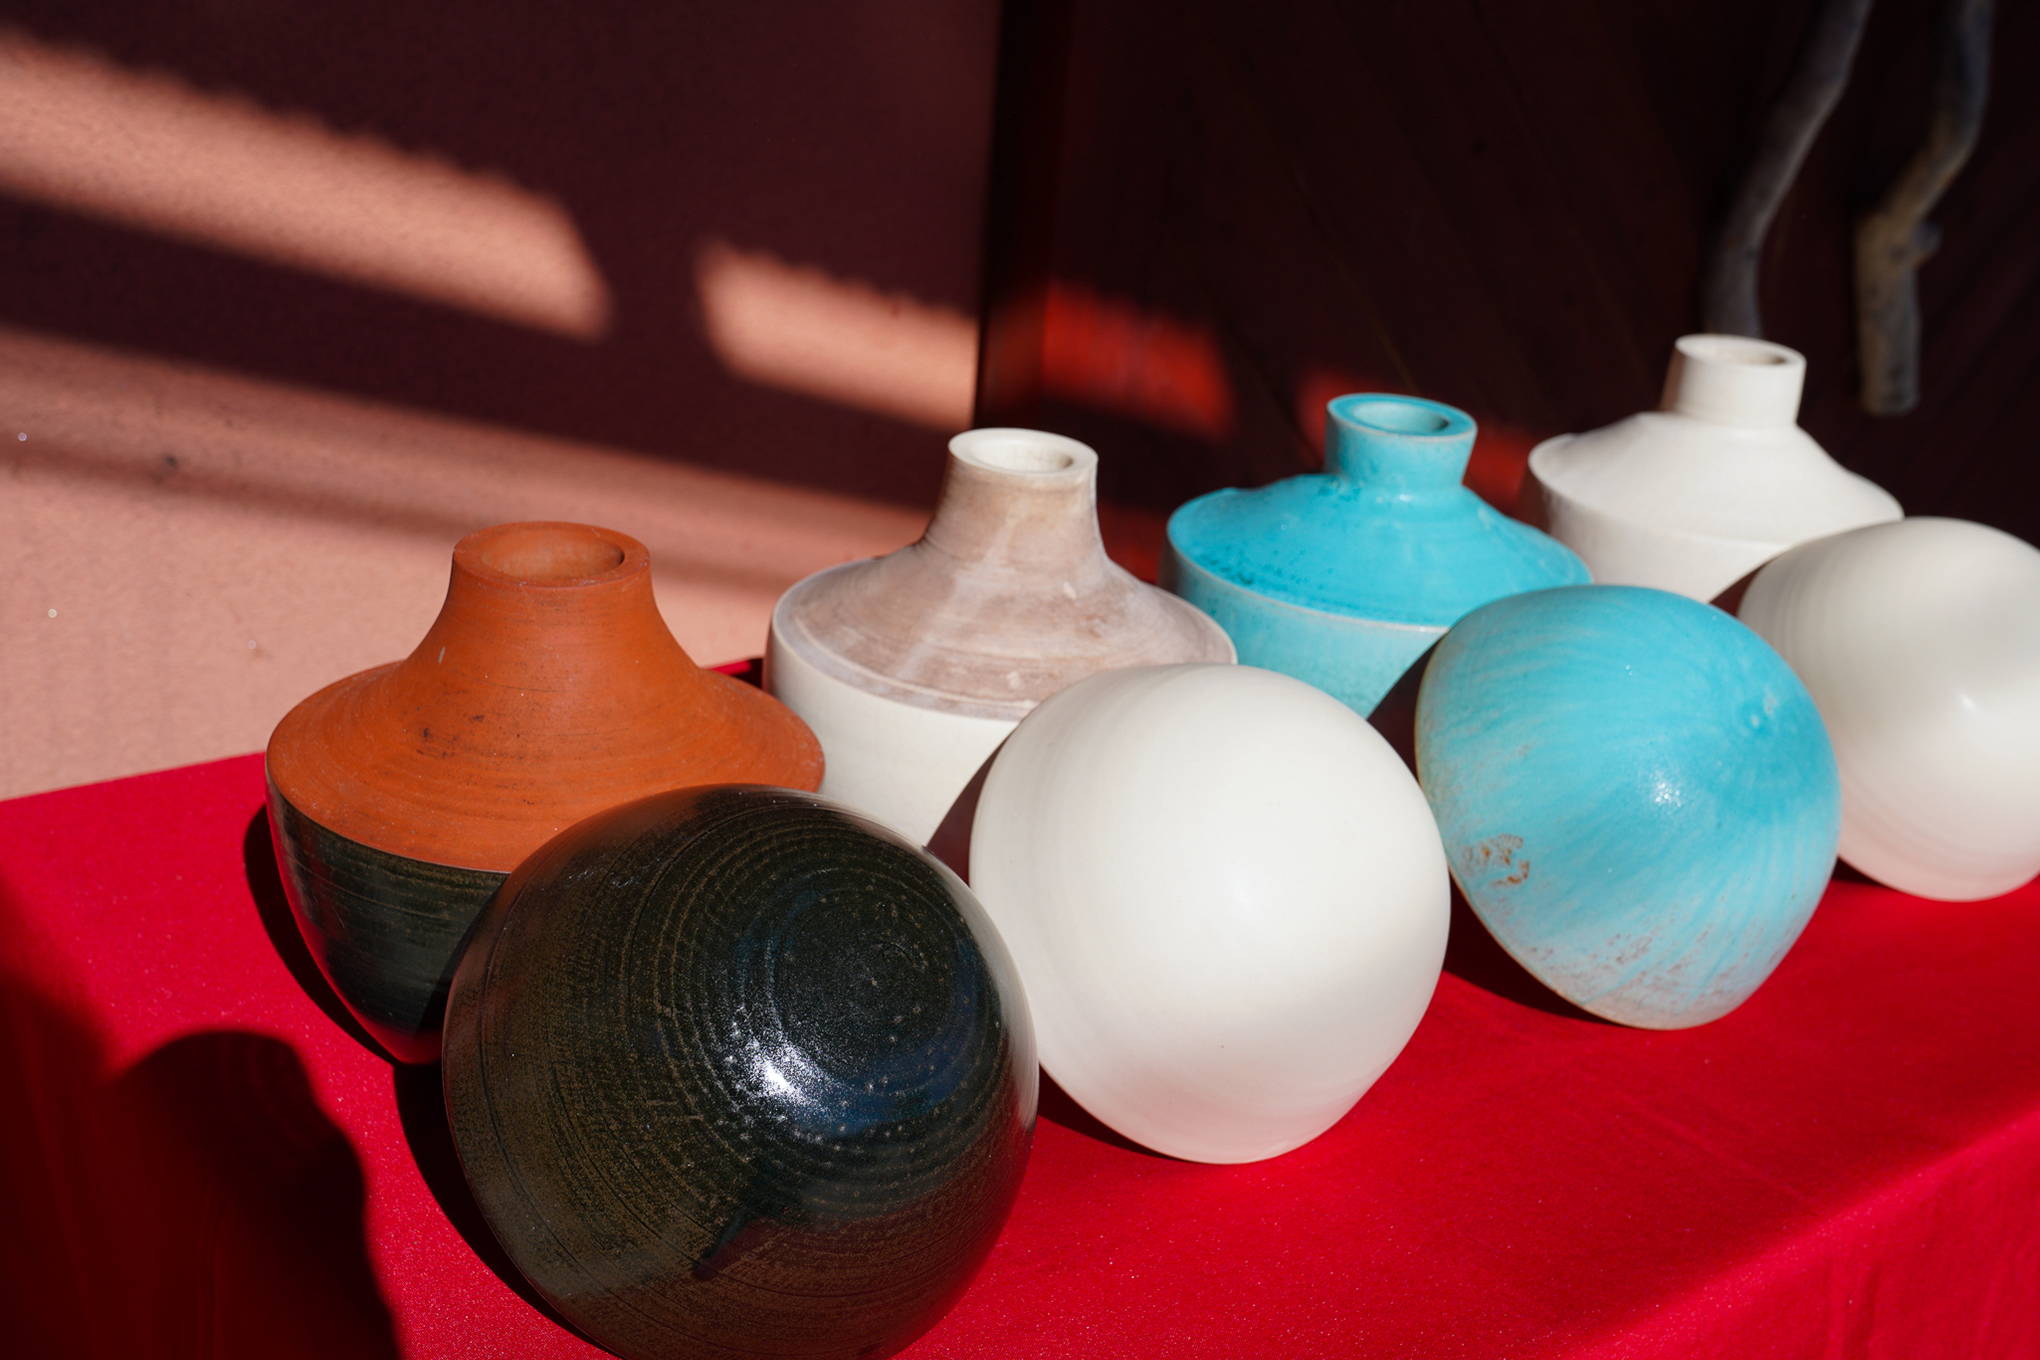 対談の舞台となったのは、京都の『嘉祥窯』がアトリエを構える滋賀県・信楽。この地で「ワインのための陶器の壺」が誕生しました。